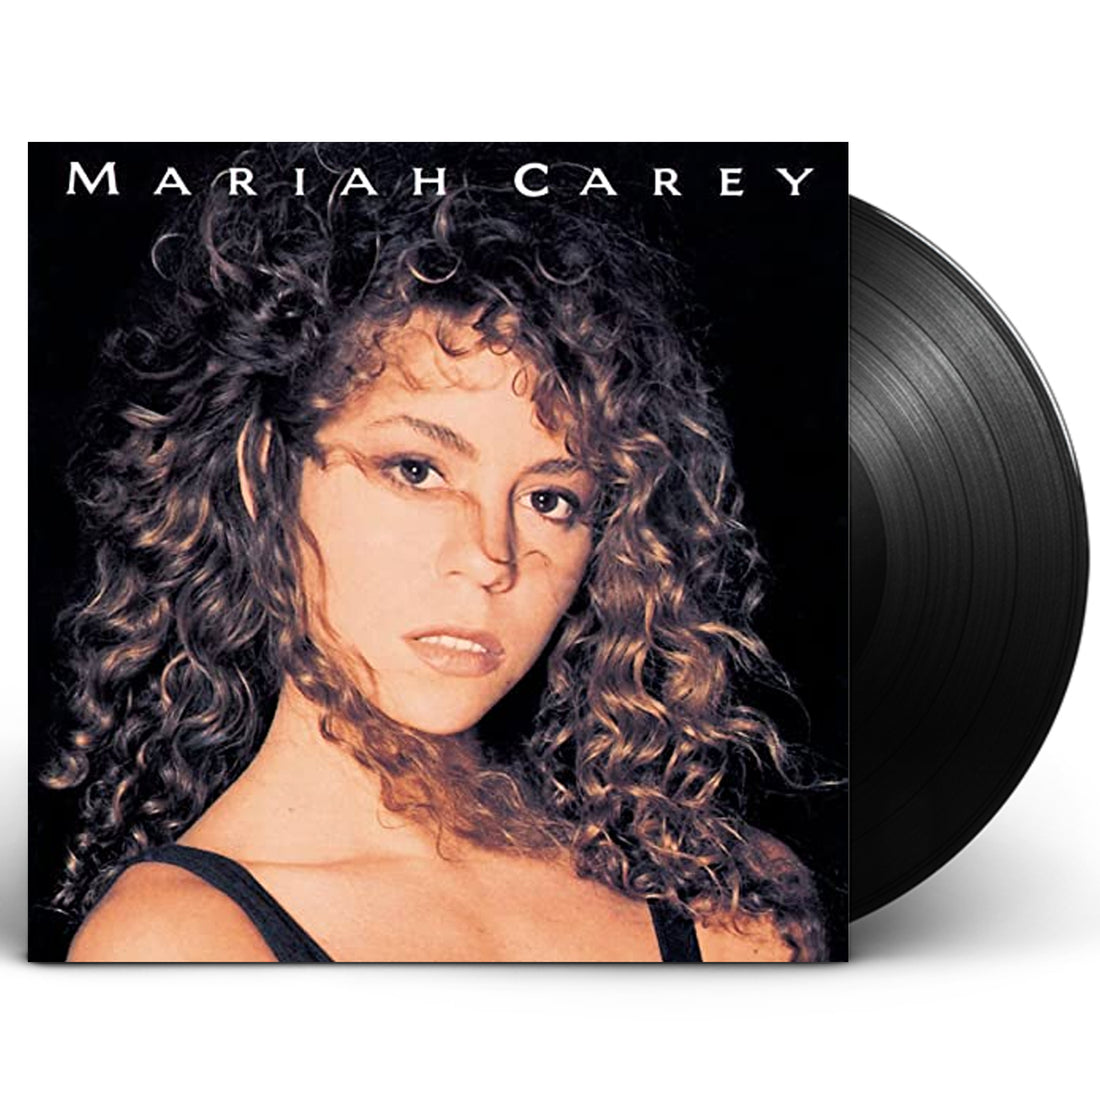 Mariah Carey "Mariah Carey" LP Vinyl